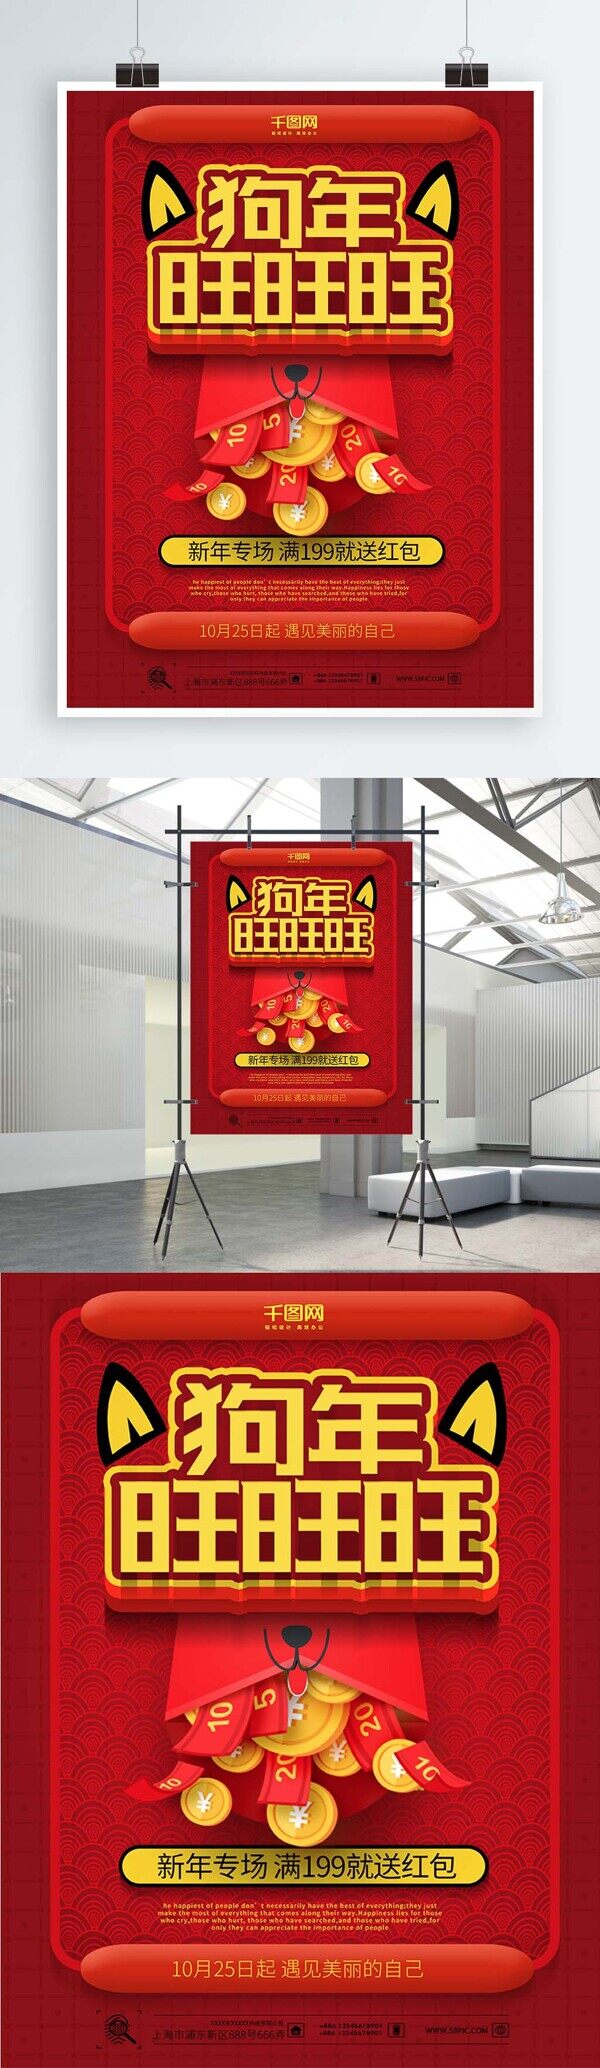 旺旺旺红色喜庆中国风狗年促销海报设计